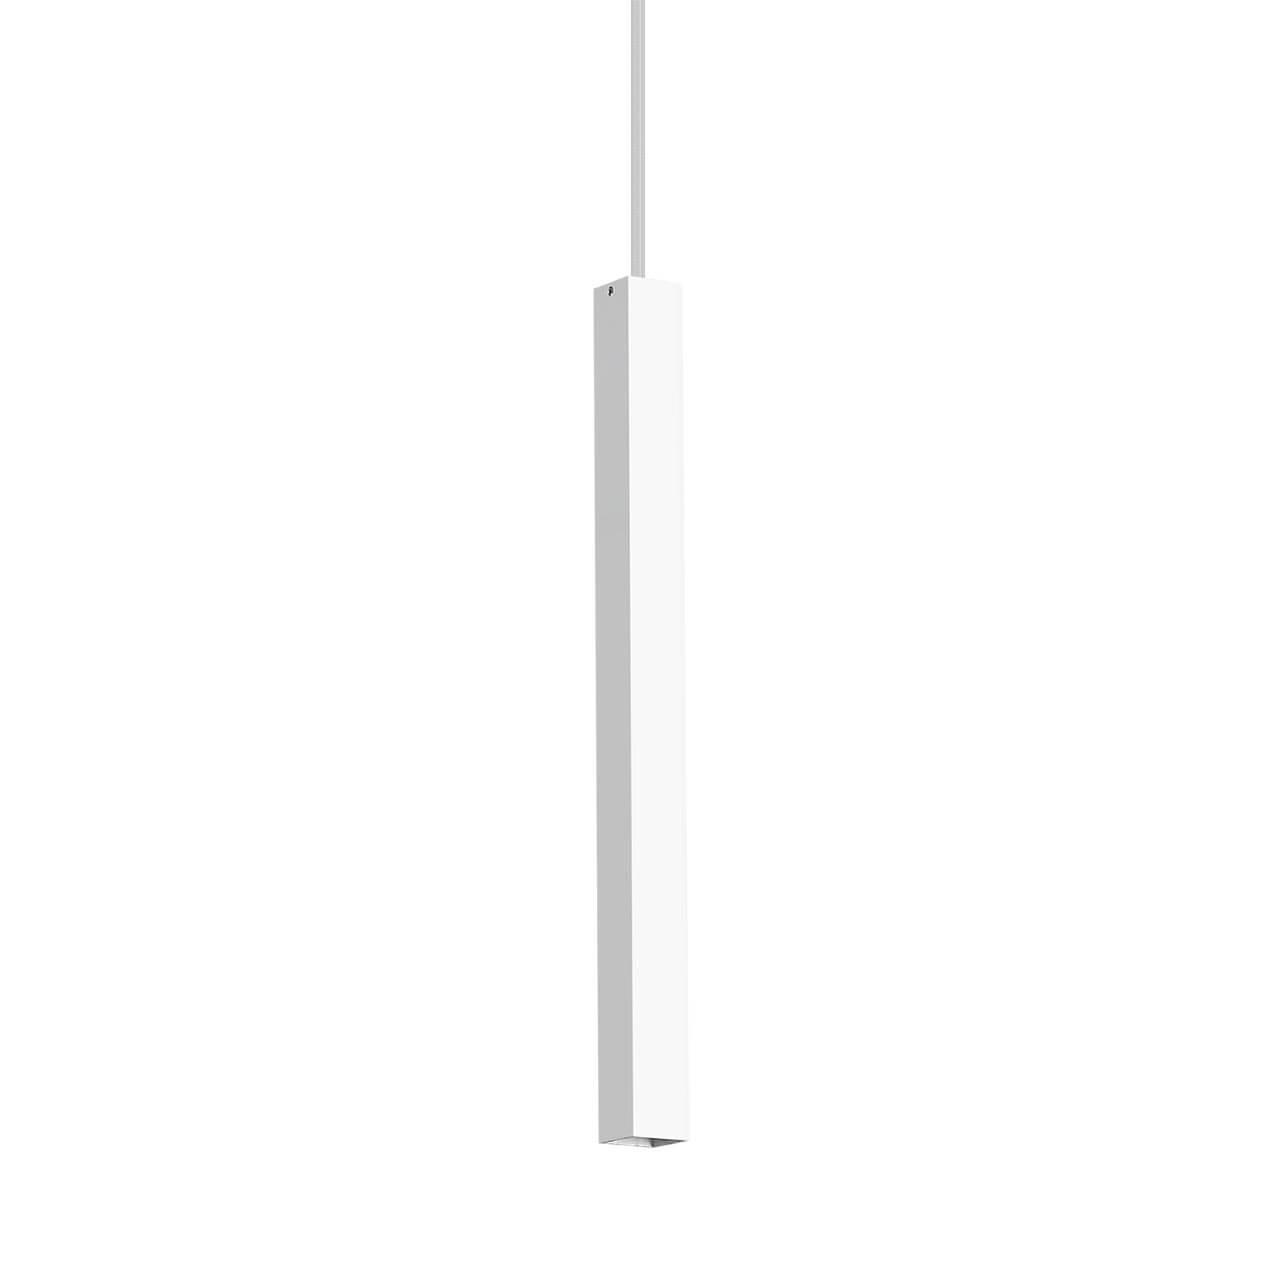 Подвесной светодиодный светильник Ideal Lux Ultrathin D040 Square Bianco 194189 заглушка arh decore s12 ext f square глухая arlight пластик